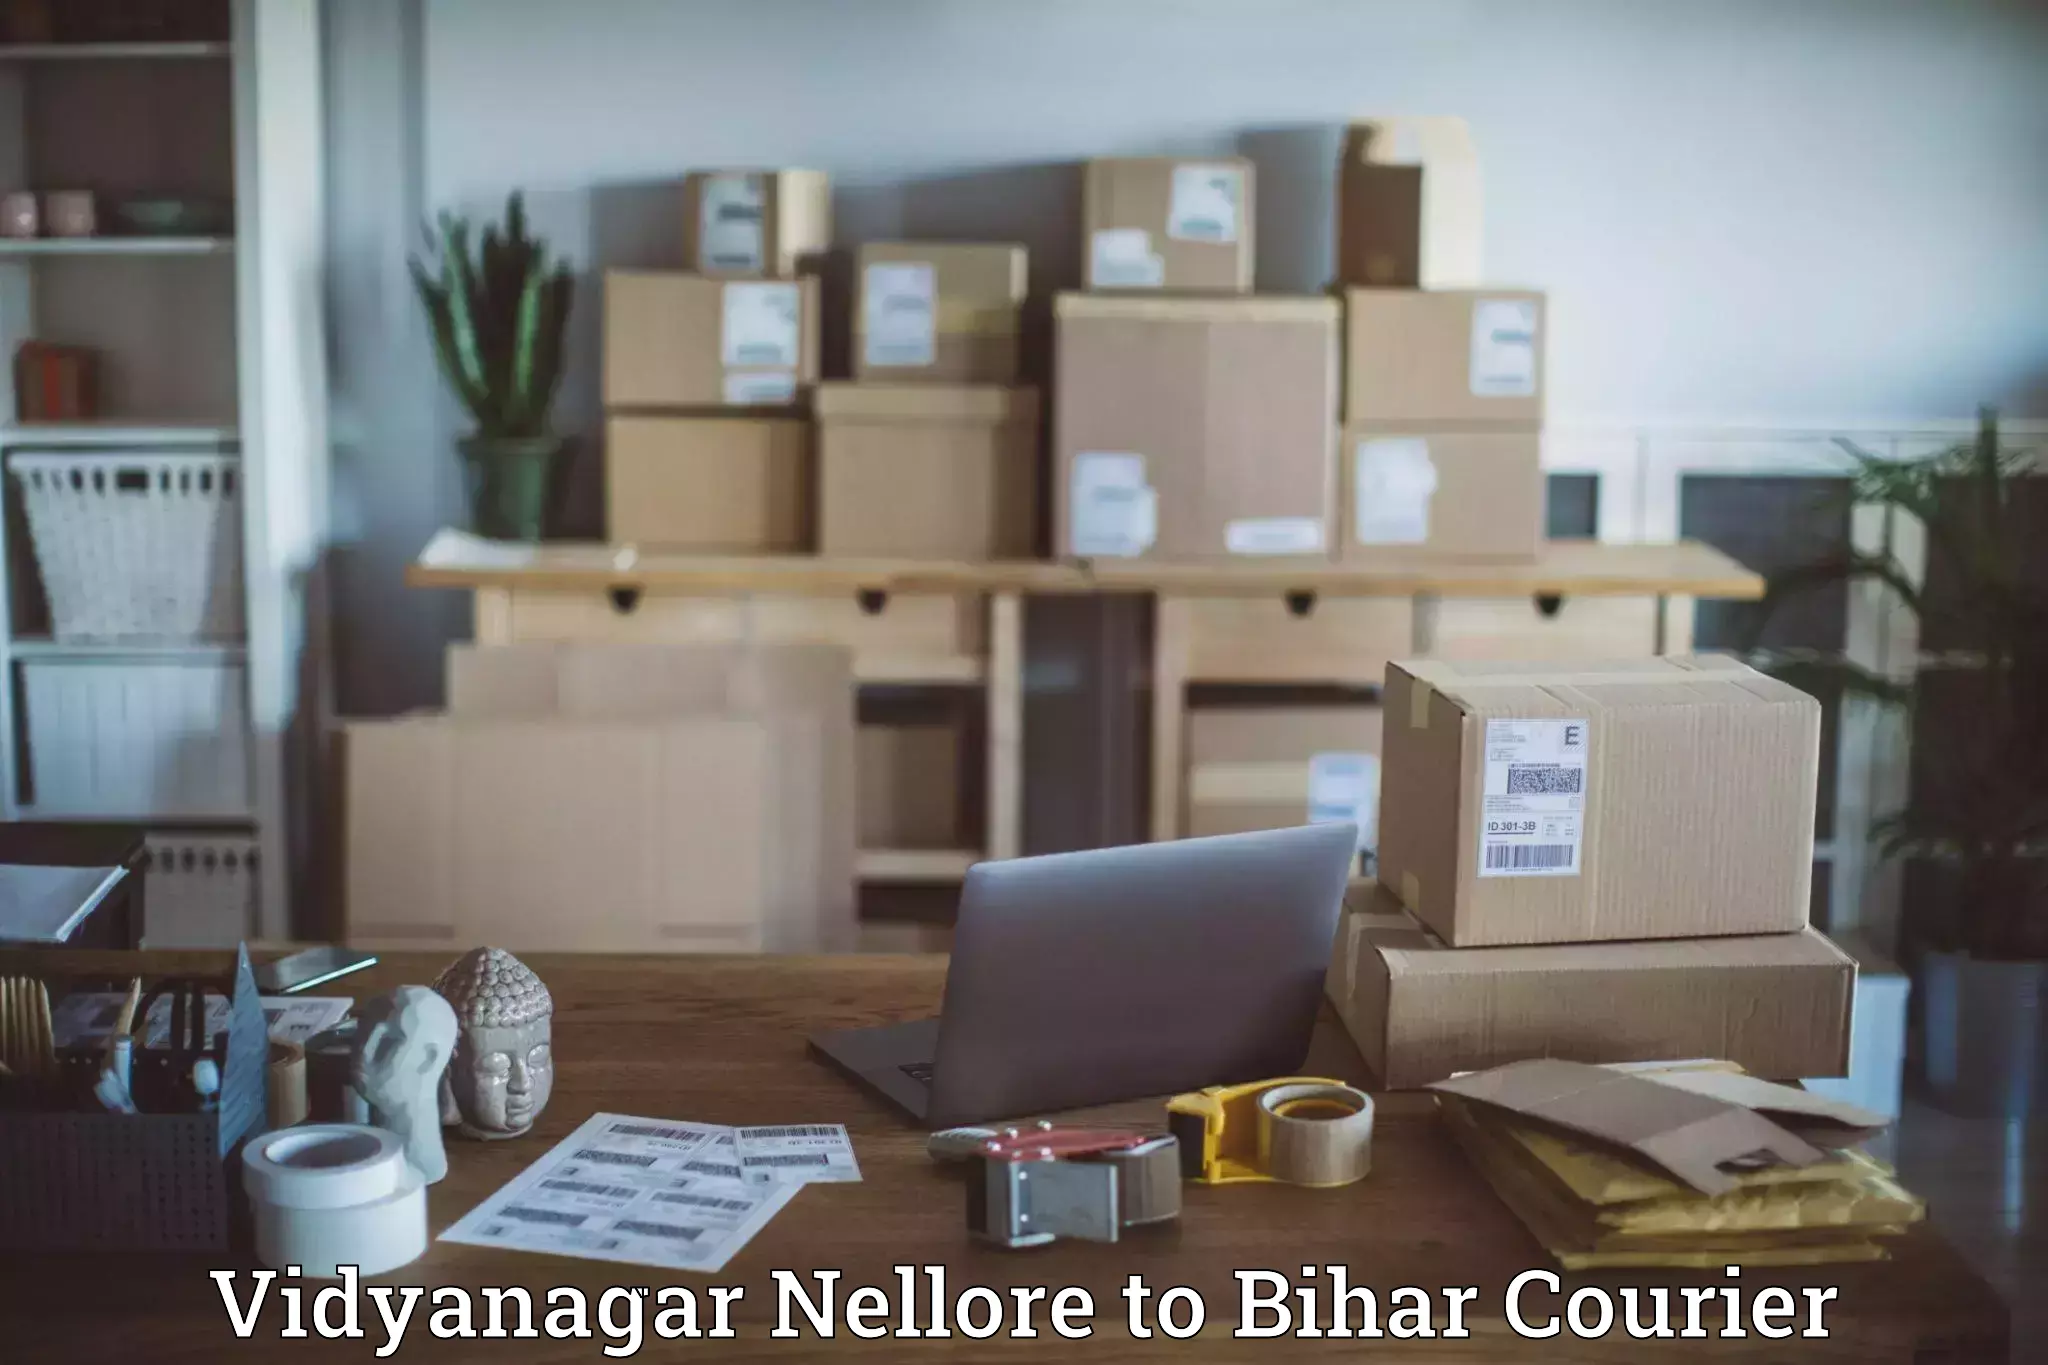 24-hour courier services Vidyanagar Nellore to Bihar